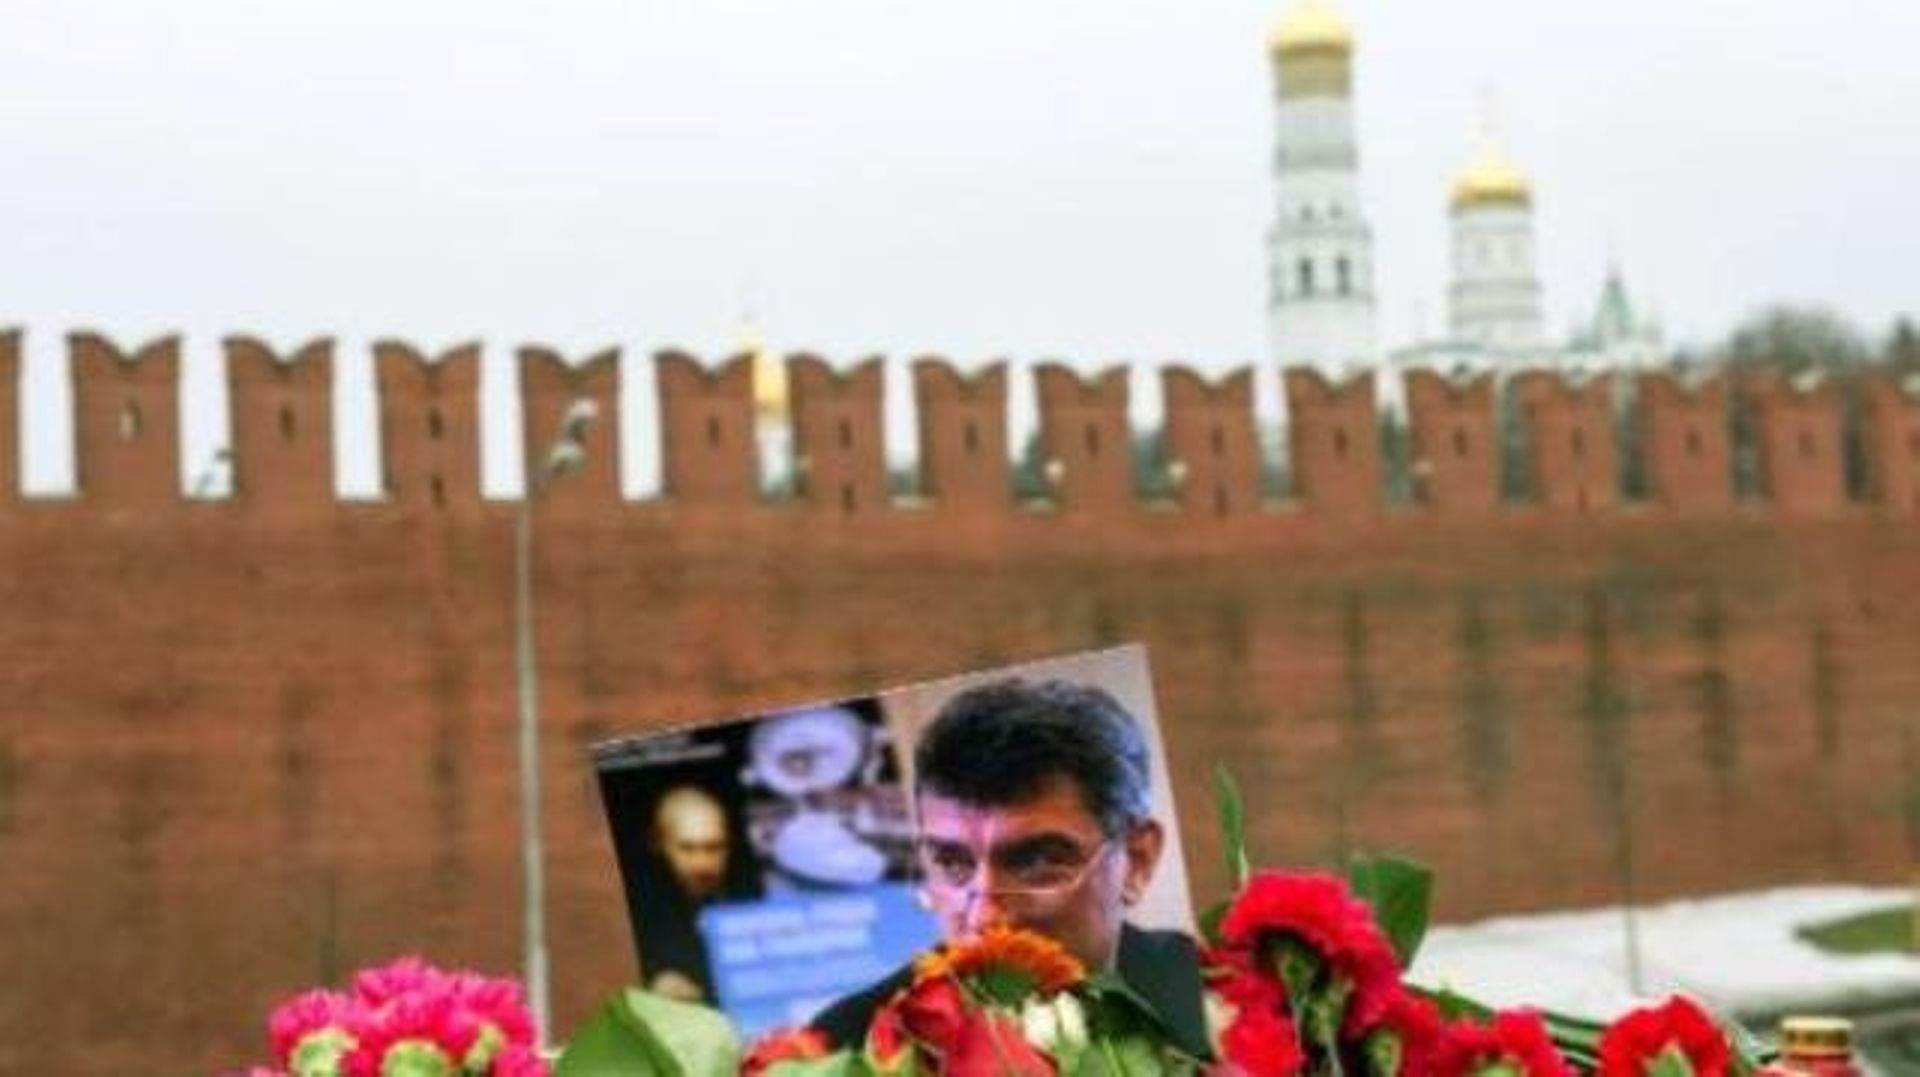 Assassinat de Boris Nemtsov - Un premier suspect identifié